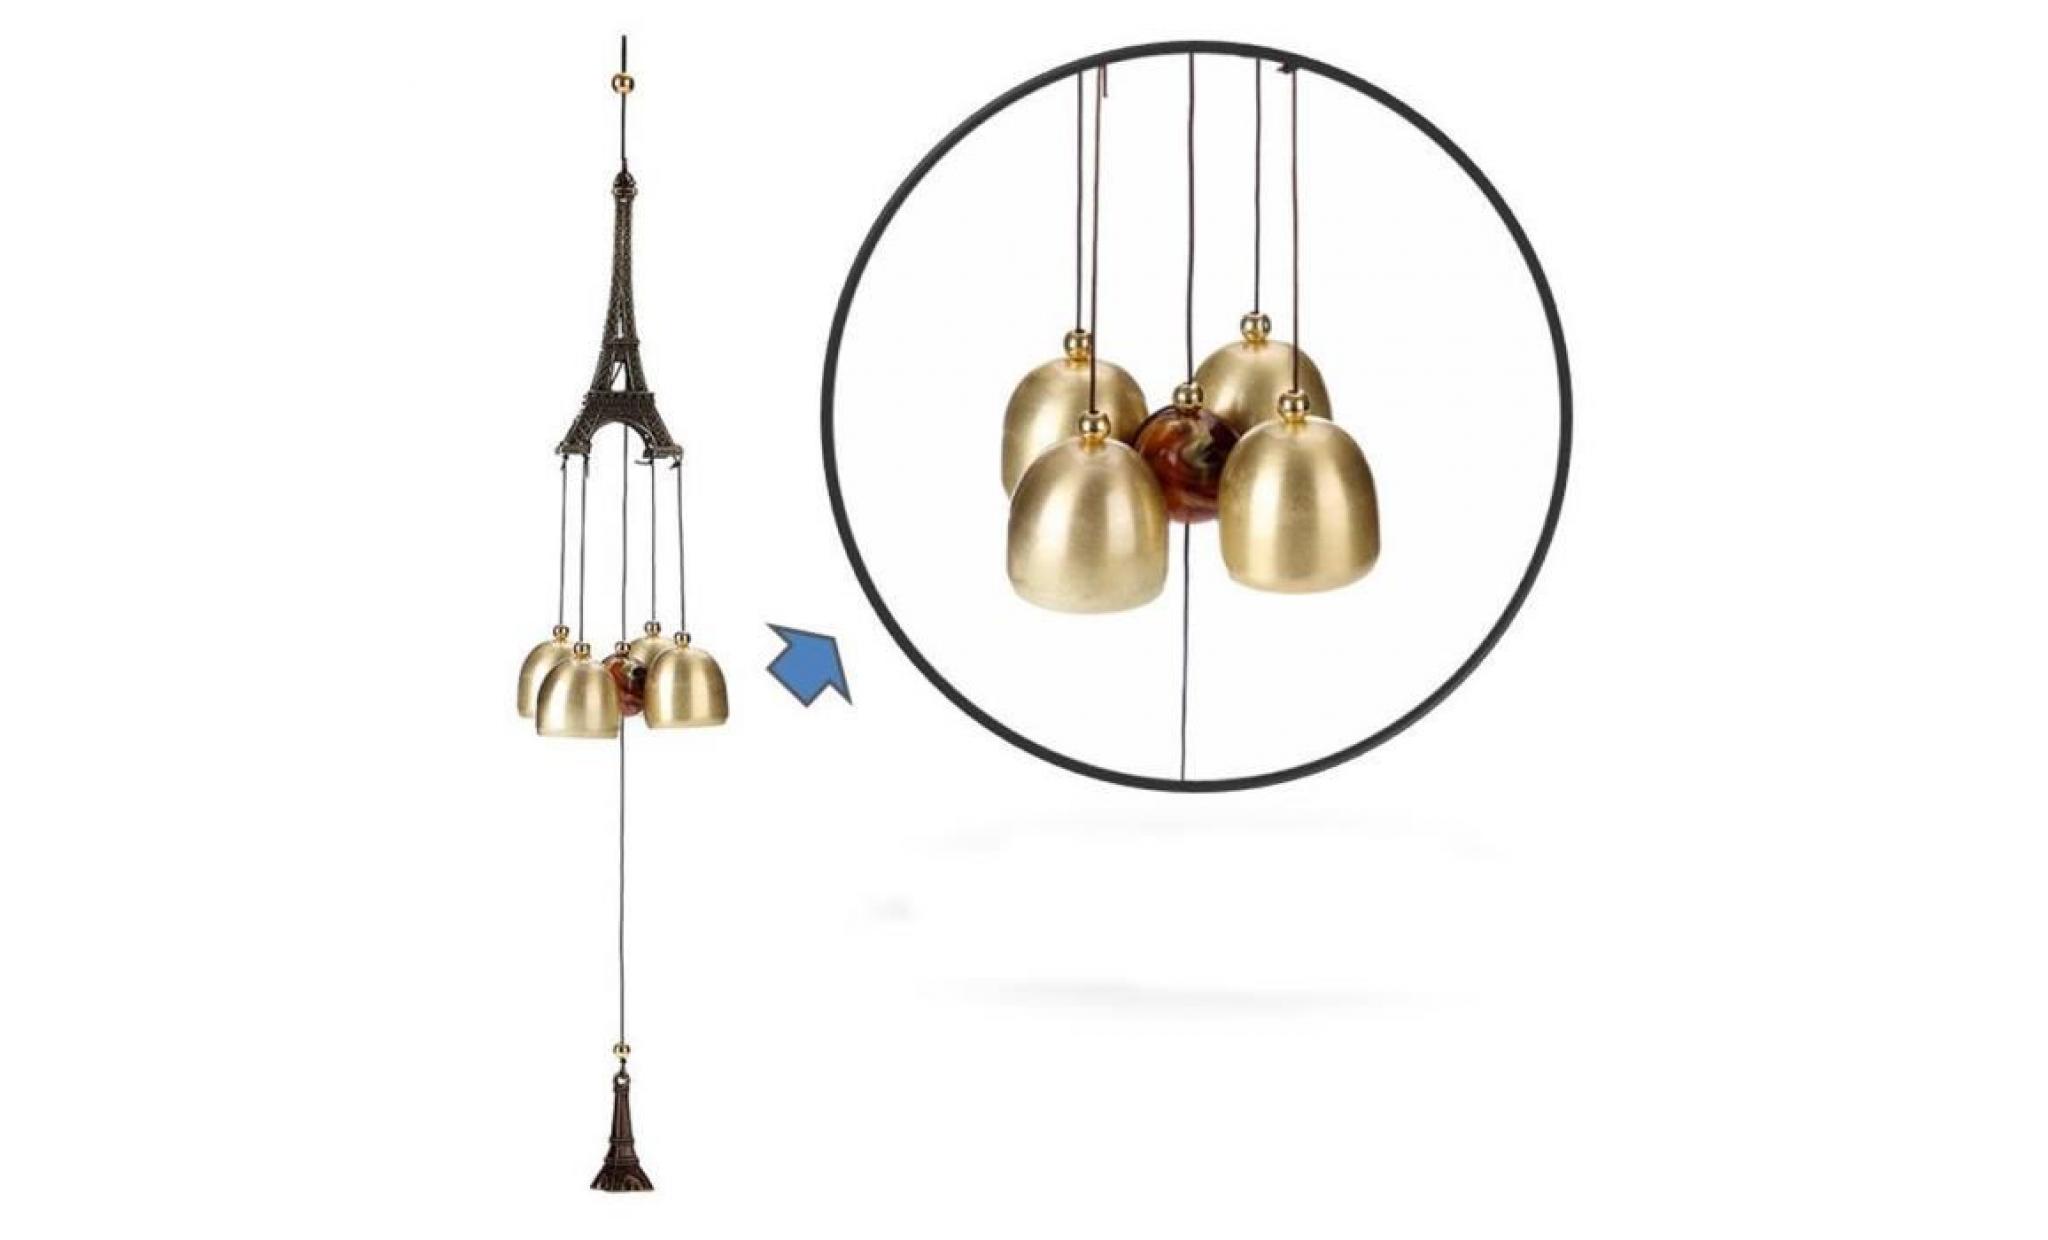 deuxsuns®amazing chime grace collection grand son bronze couleur bells carillons éoliens @1613 pas cher